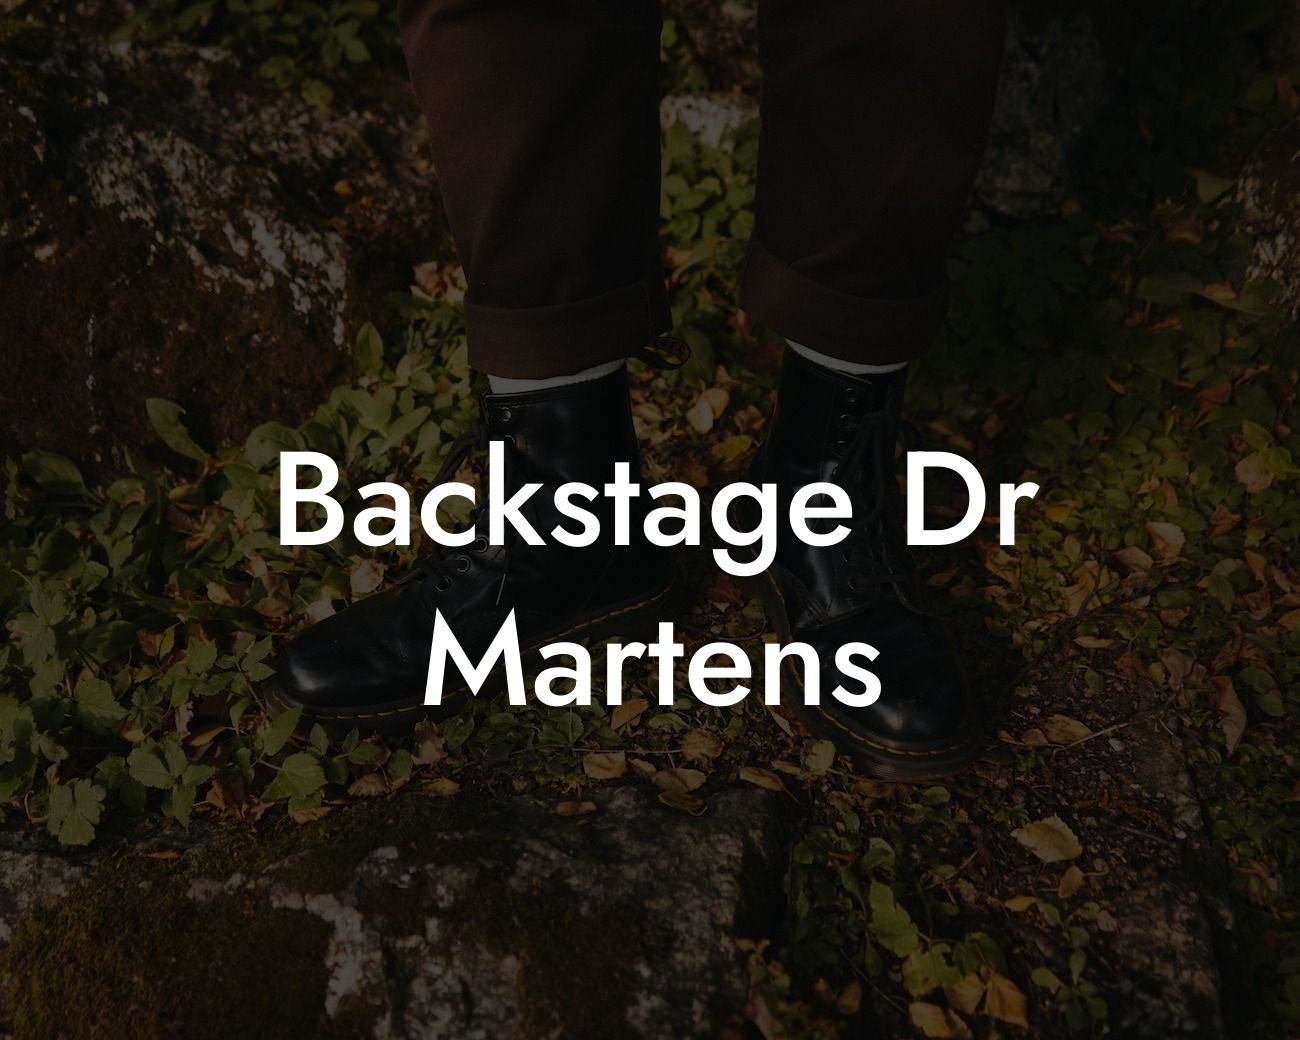 Backstage Dr Martens